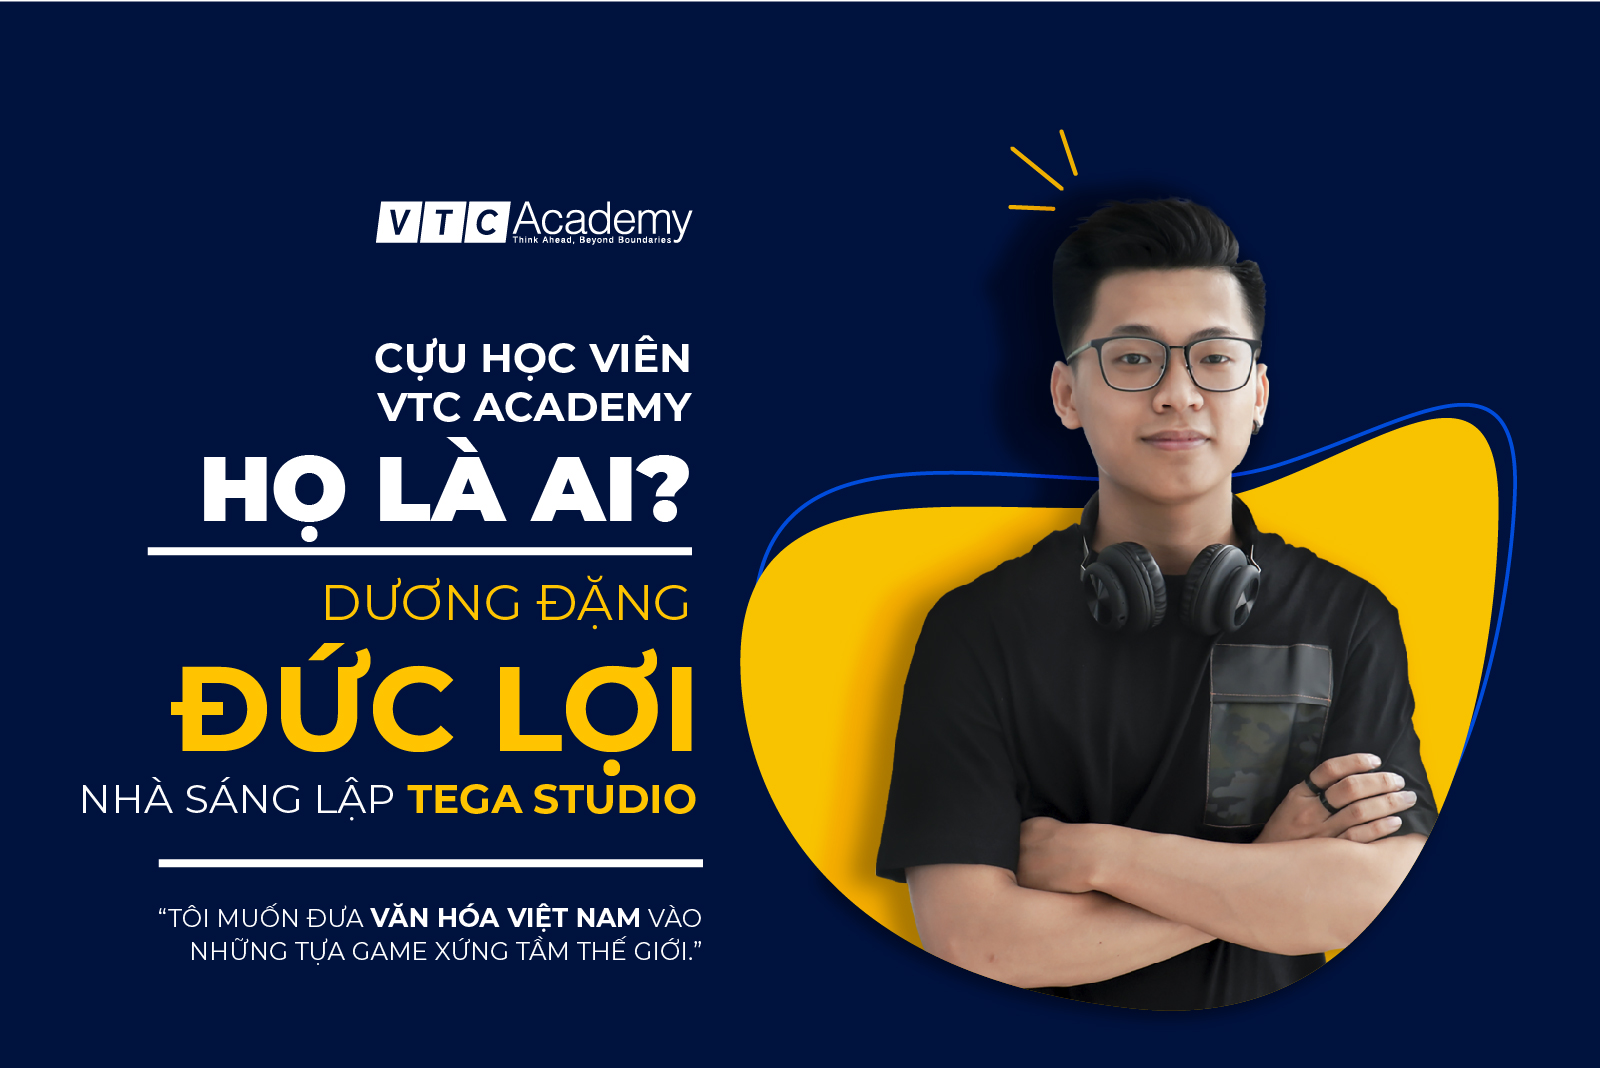 Nhà sáng lập TEGA Studio: “Tôi muốn đưa văn hóa Việt vào những tựa game xứng tầm thế giới”